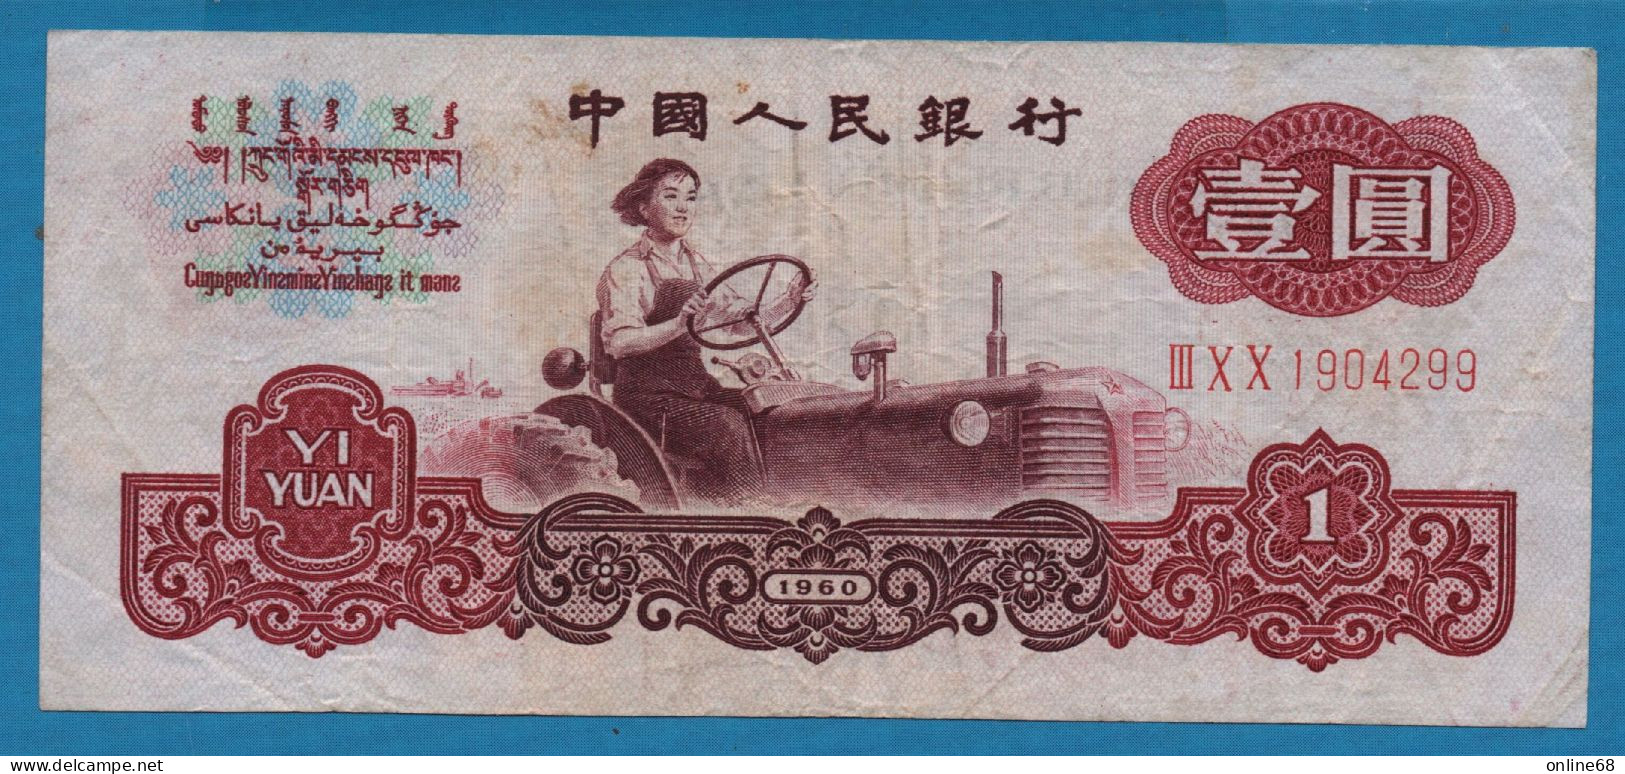 CHINA 1 YUAN 1960 # III X X 1904299 P# 874a Miss Liang Jun - China